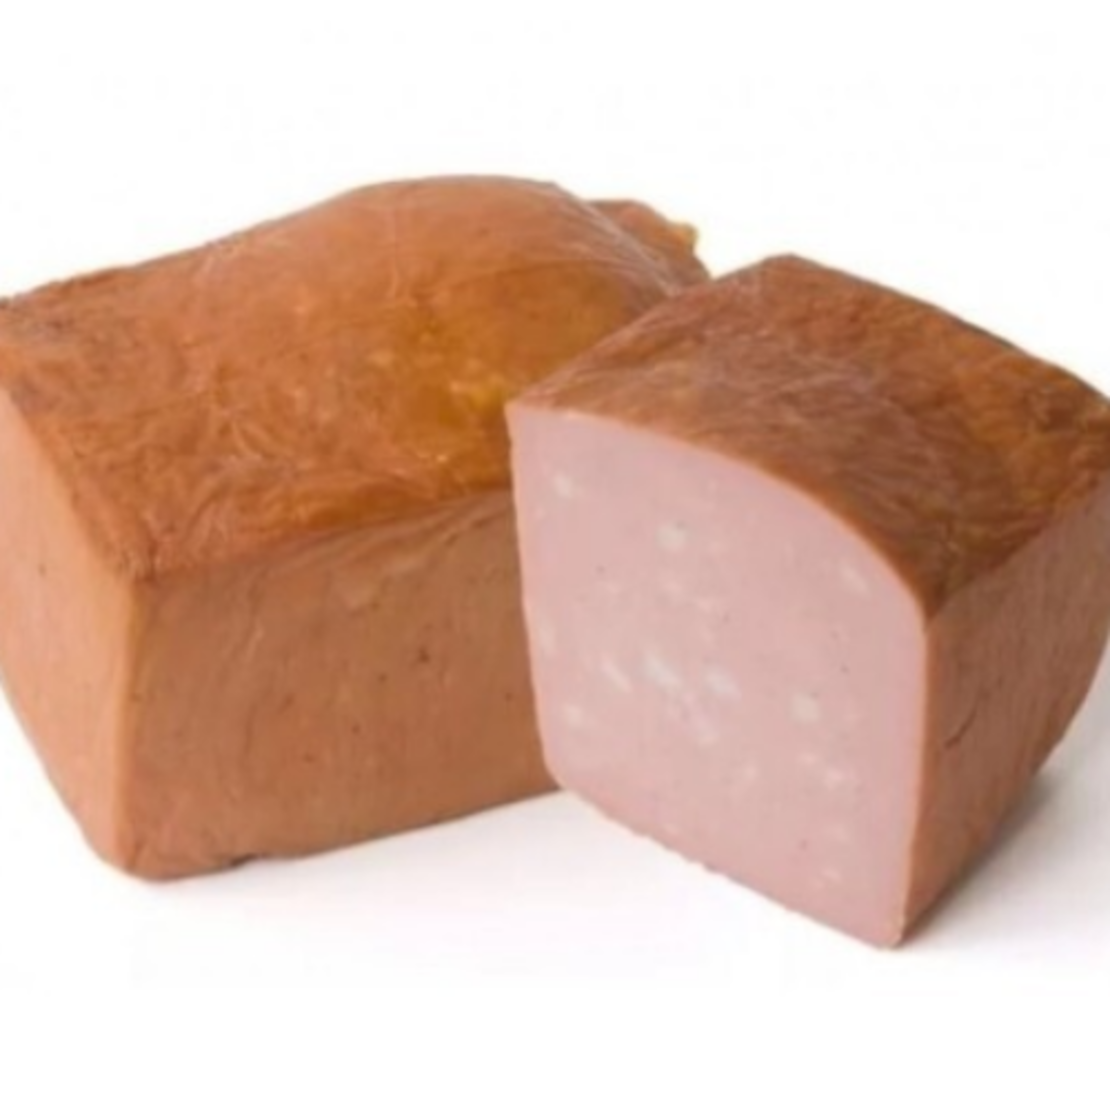 Мясо хлеб екатерининская ул